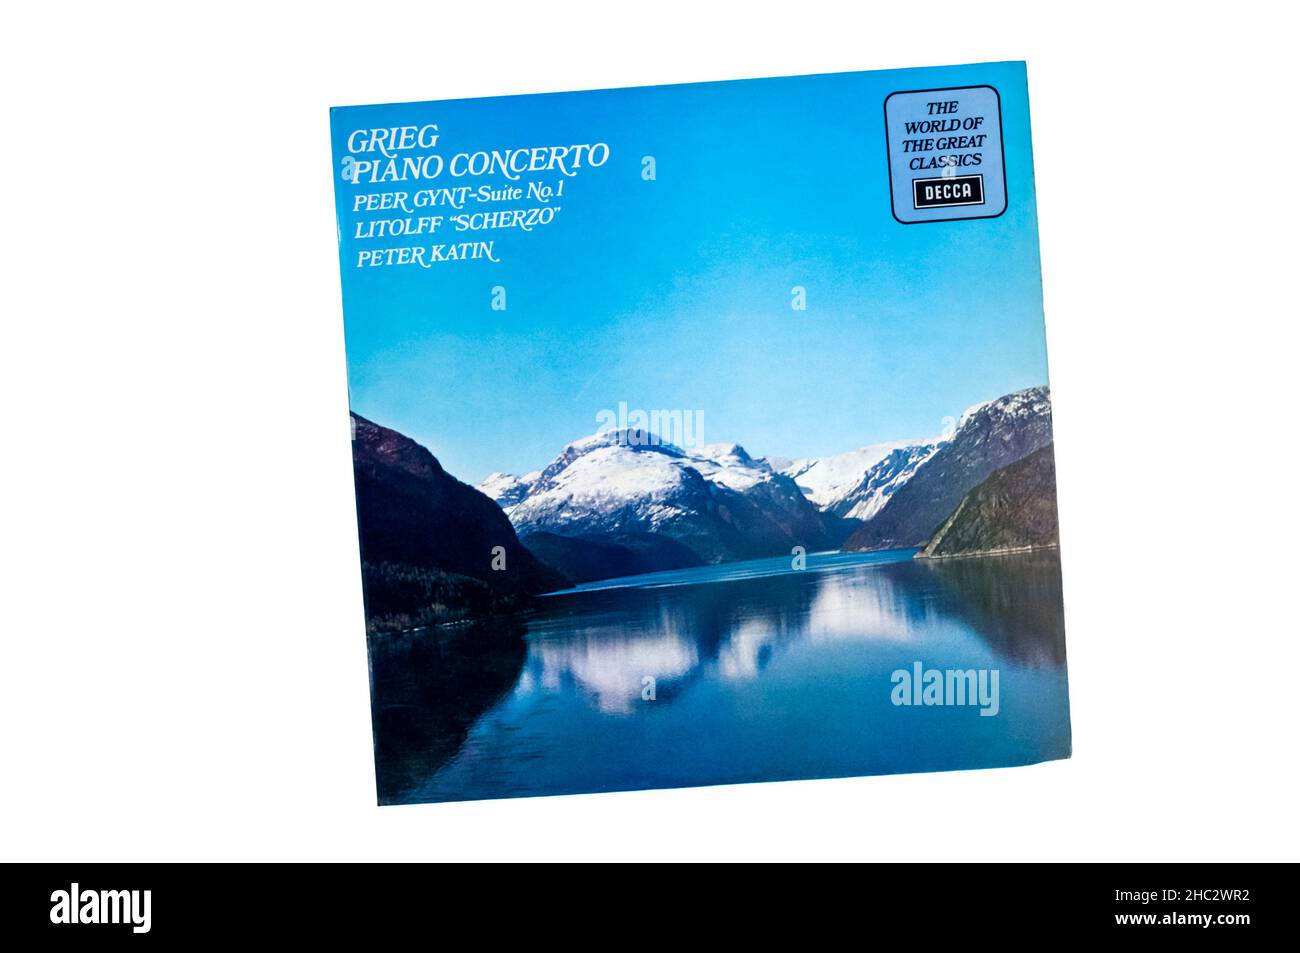 Decca World of Great Classics grabación de Grieg's Piano Concerto. Foto de stock